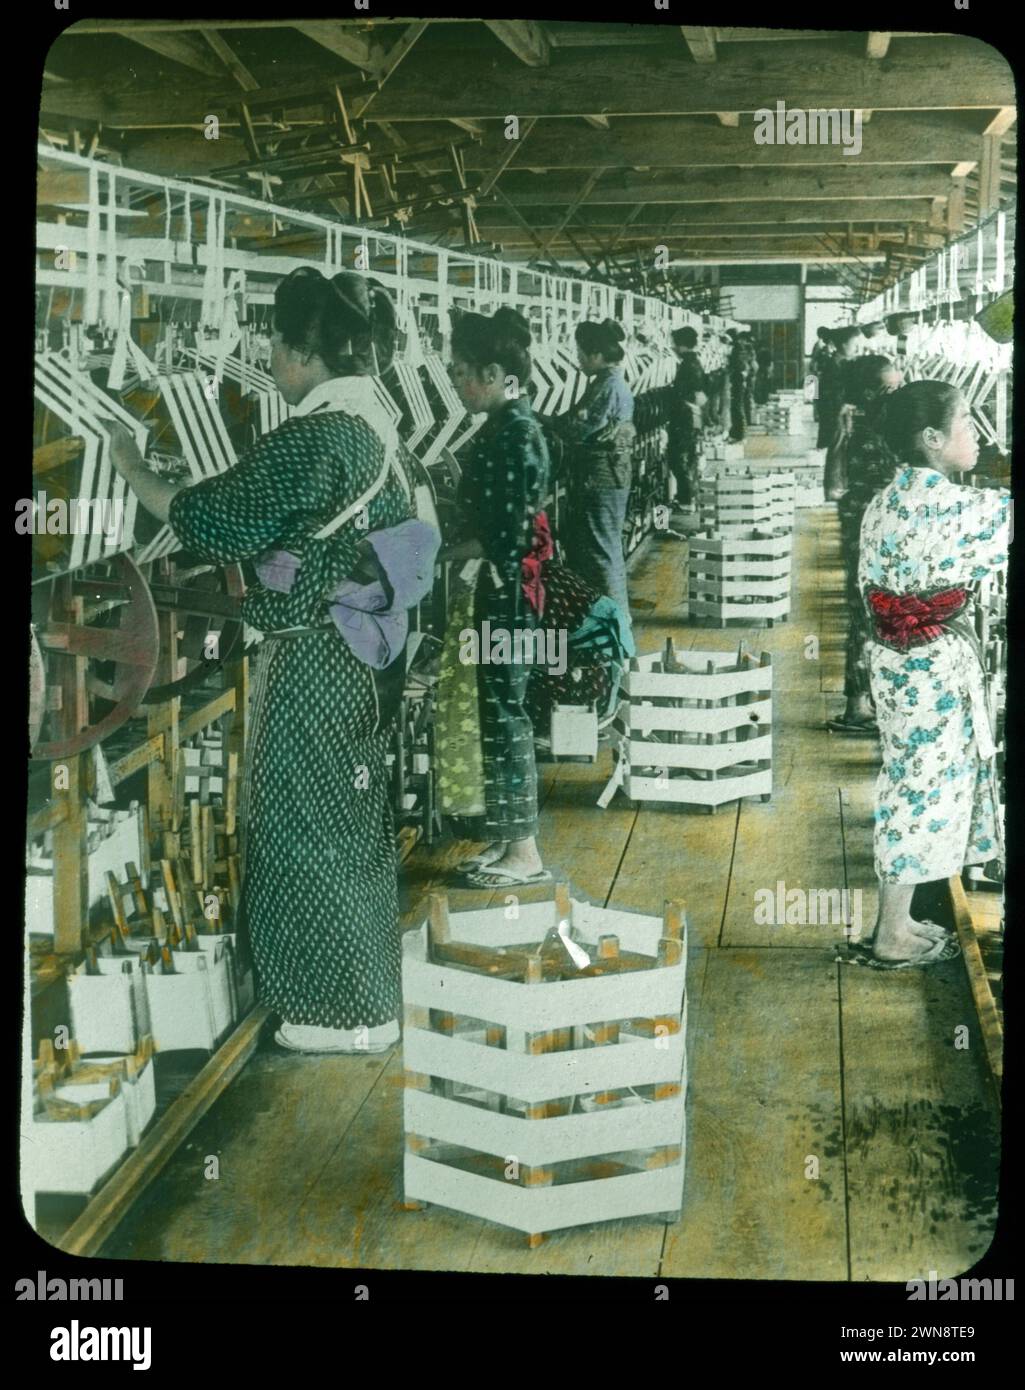 Aus Hebert Geddes 'Life in Japan' Kollektion: Handfarbige Vintage-Glasfolien aus der Meiji-Ära. Yokohama, Japan Ende des 19. Jahrhunderts. Diese Bilder von verschiedenen japanischen Künstlern wurden an Besucher verkauft. Stockfoto